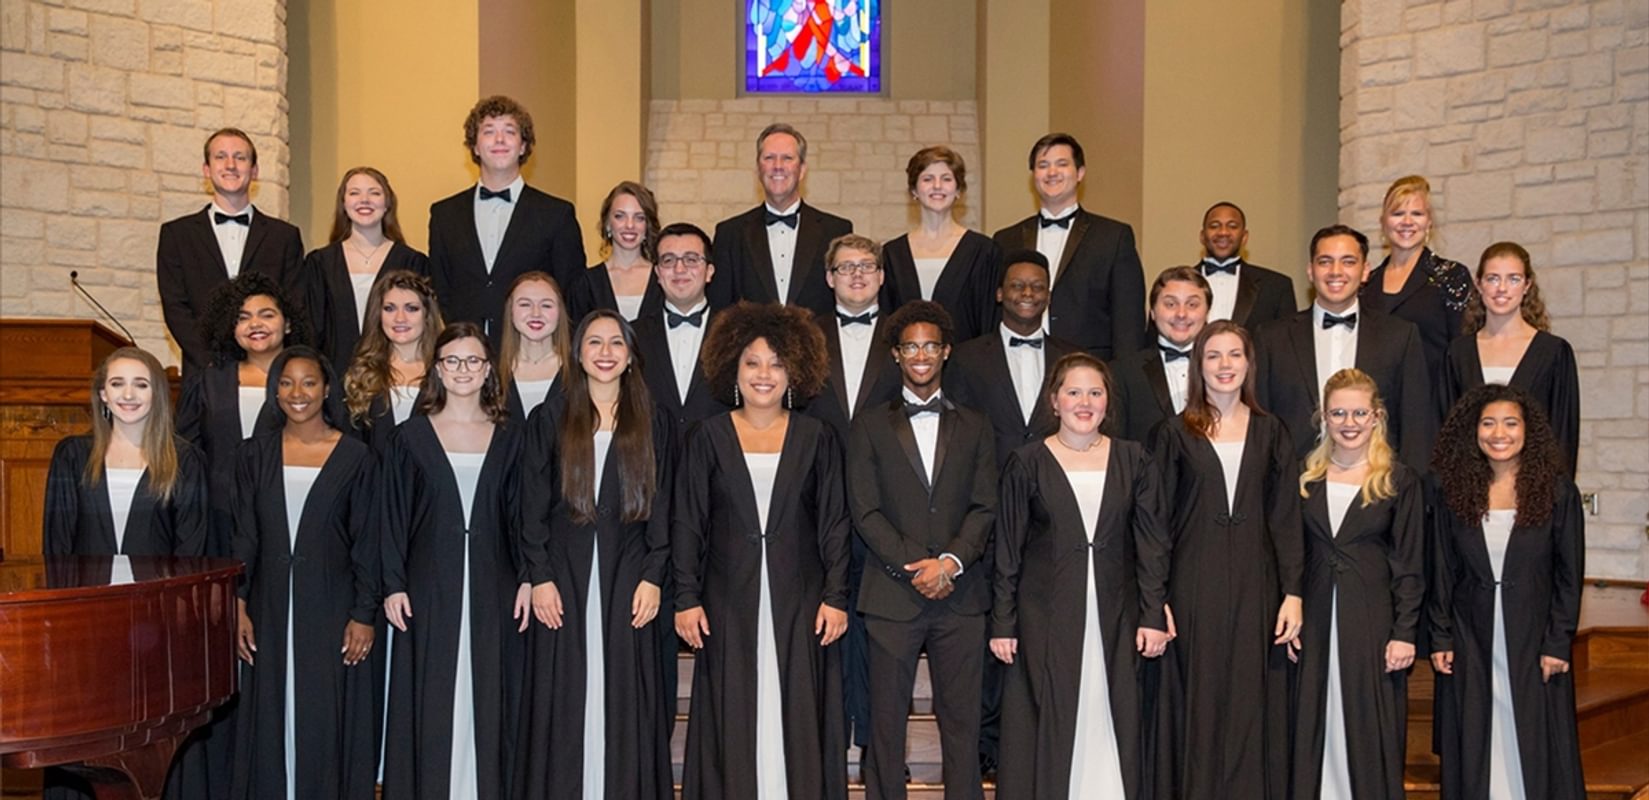 Concert Choir Presents Songs of Hope